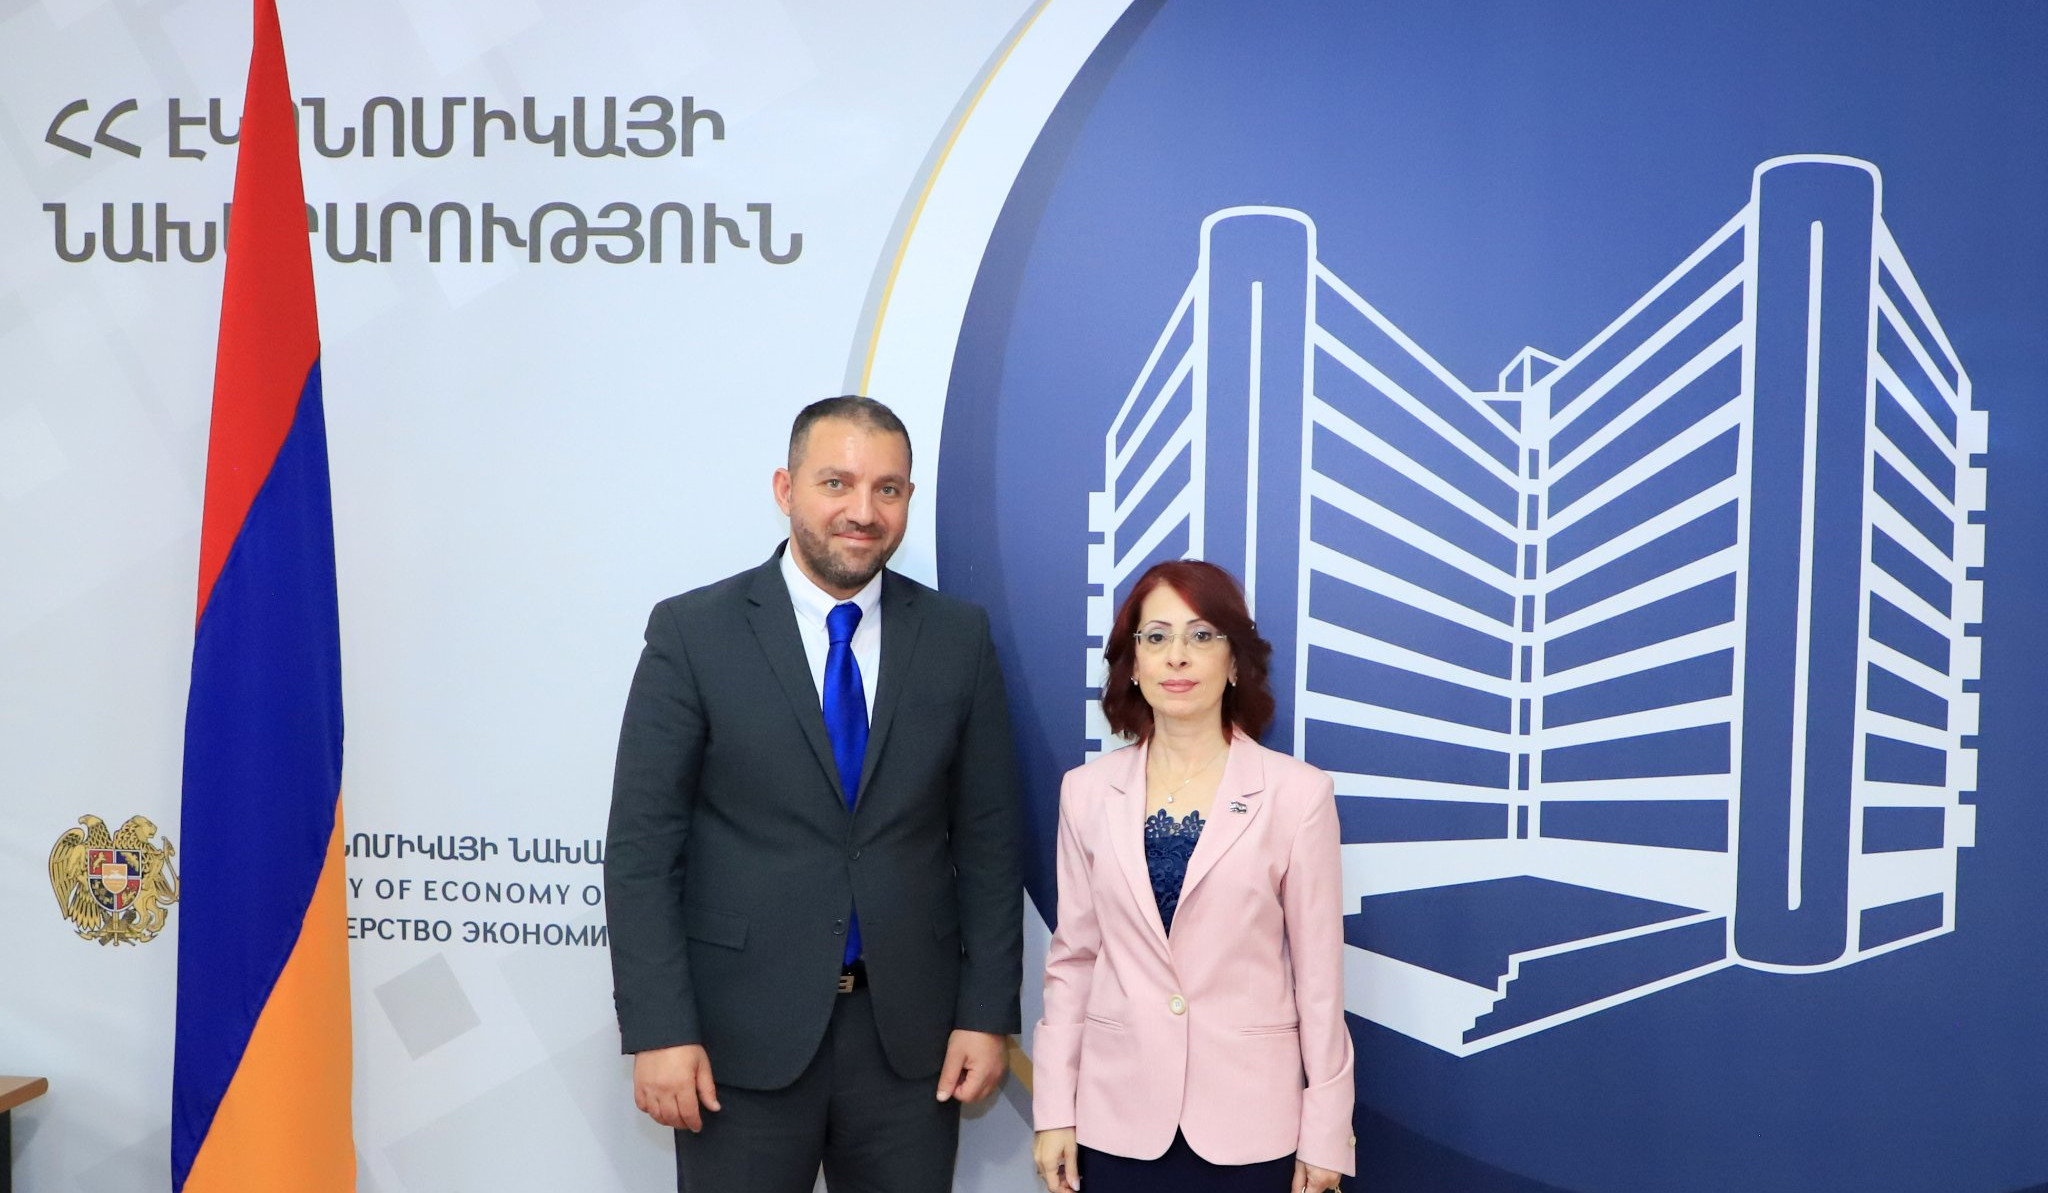 Վահան Քերոբյանը և Սիրիայի նորանշանակ դեսպանը քննարկել են հայ-սիրիական միջկառավարական հանձնաժողովի նիստի կազմակերպման հարցեր